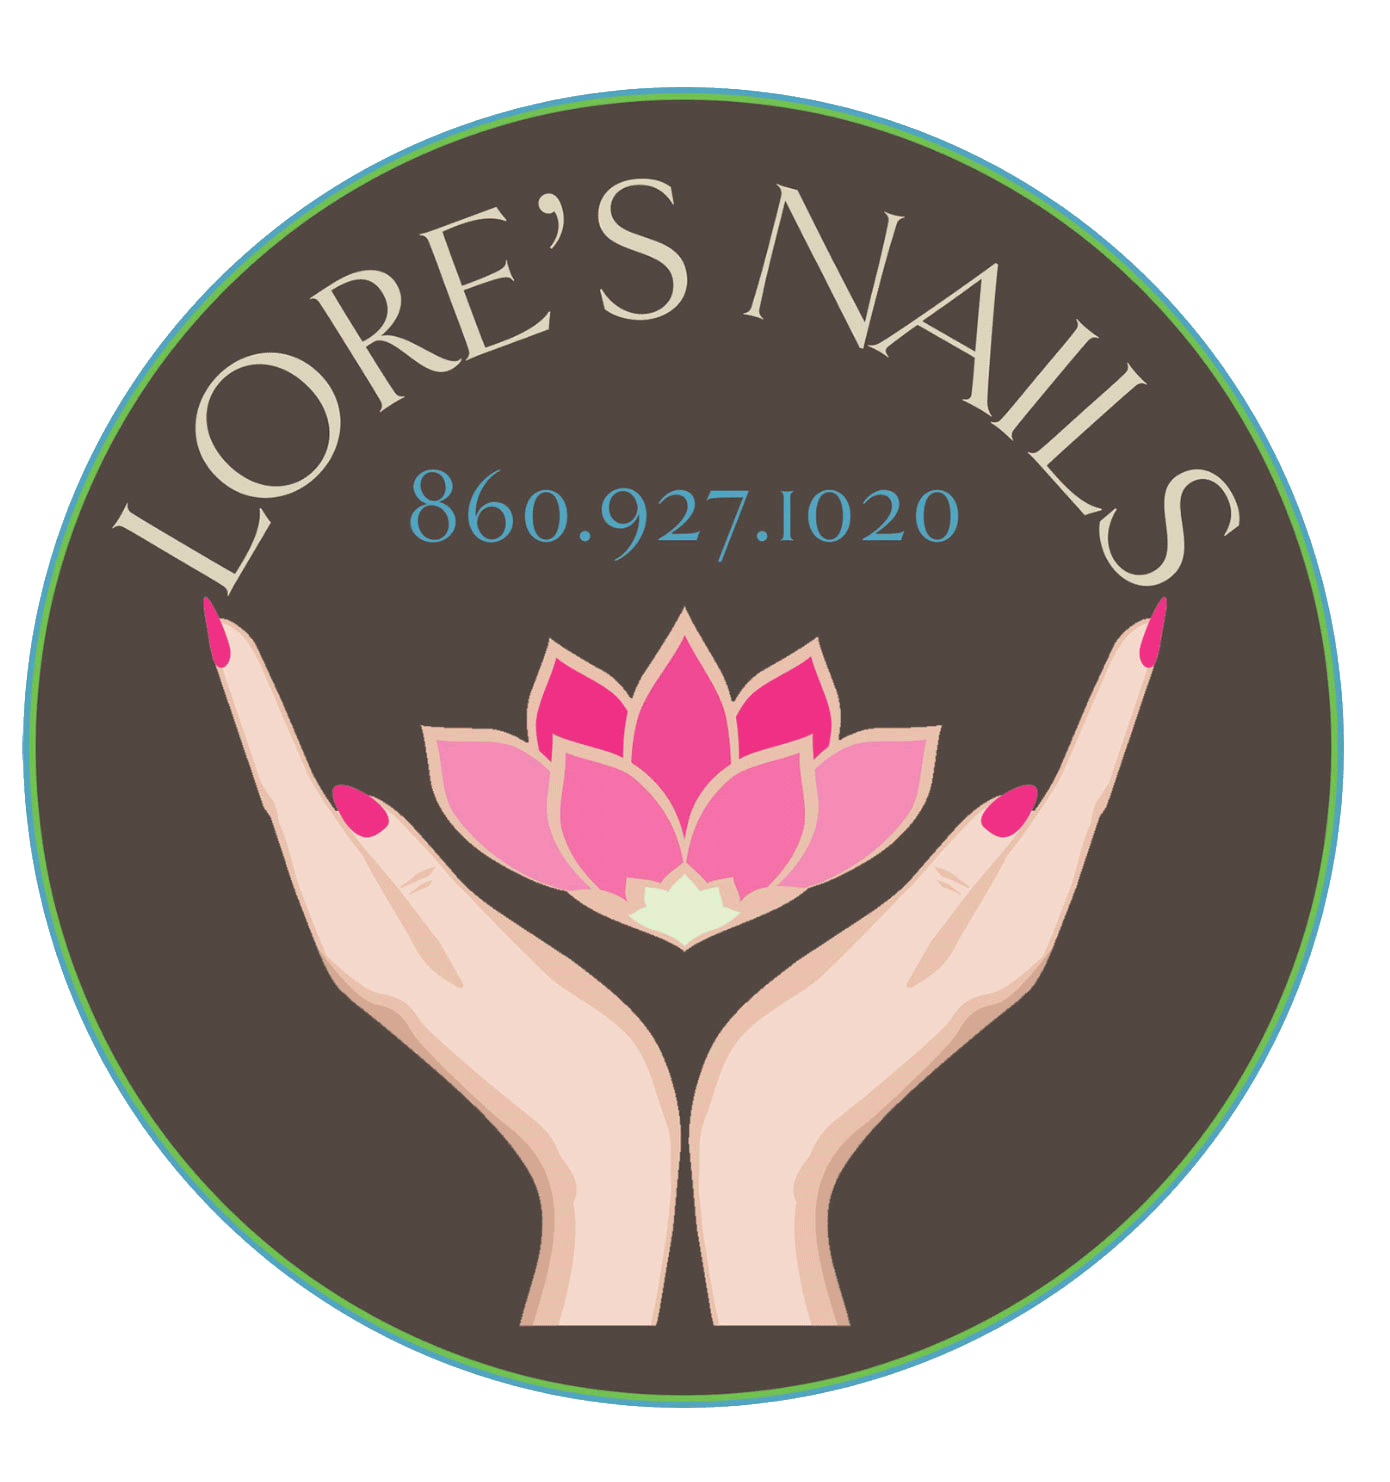 Lore's Nail Spa